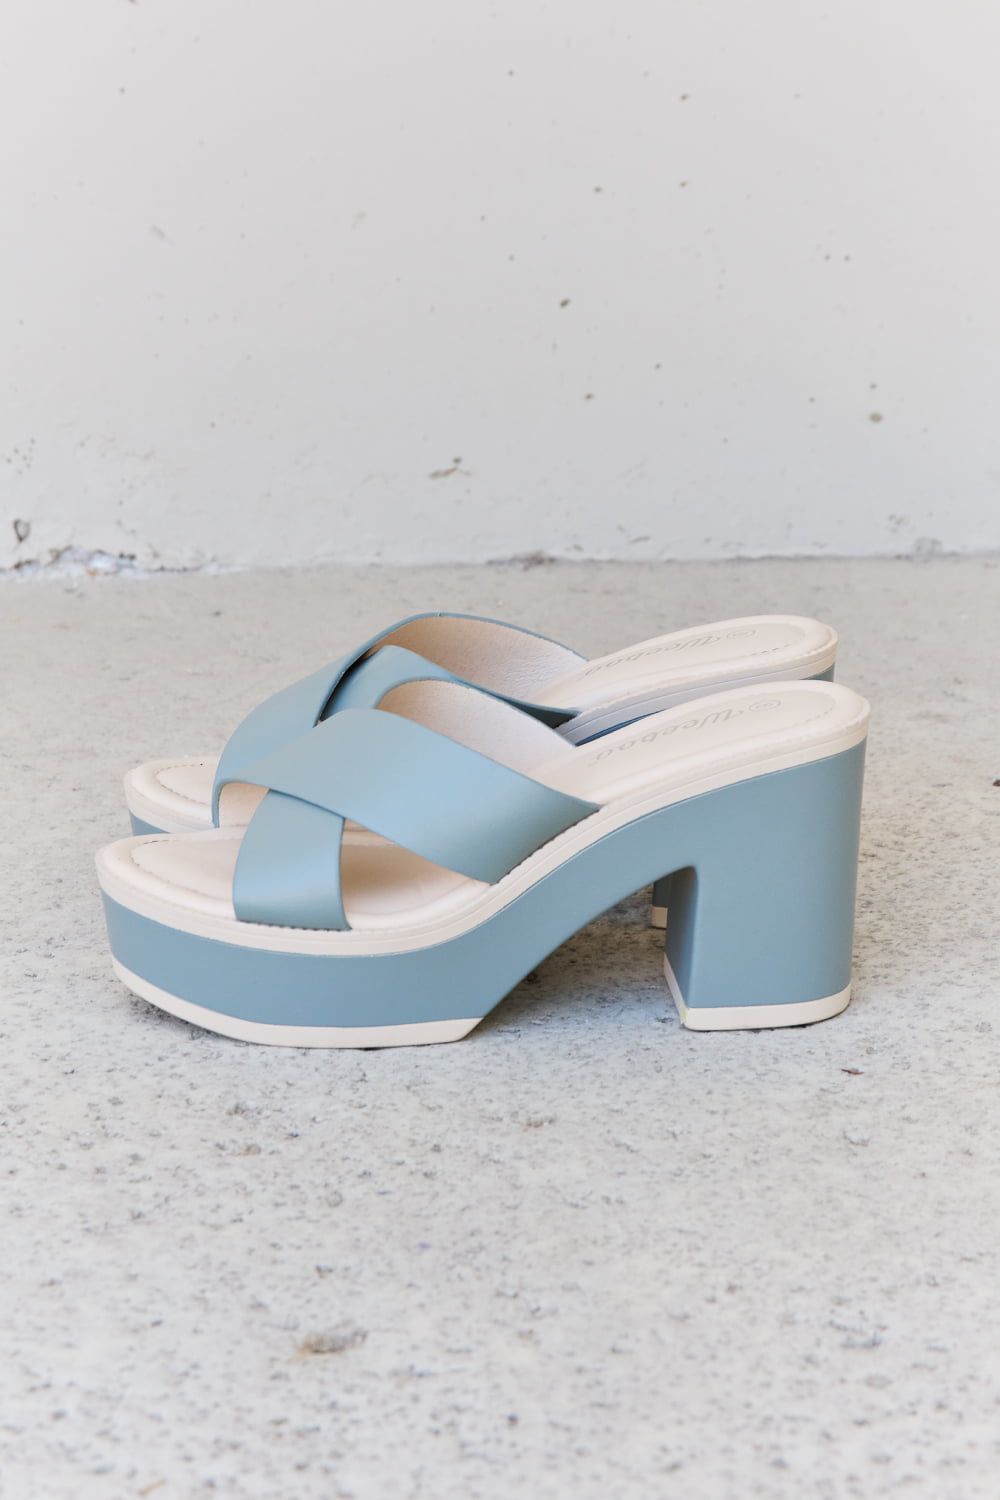 Contrast Platform Sandals in Misty Blue